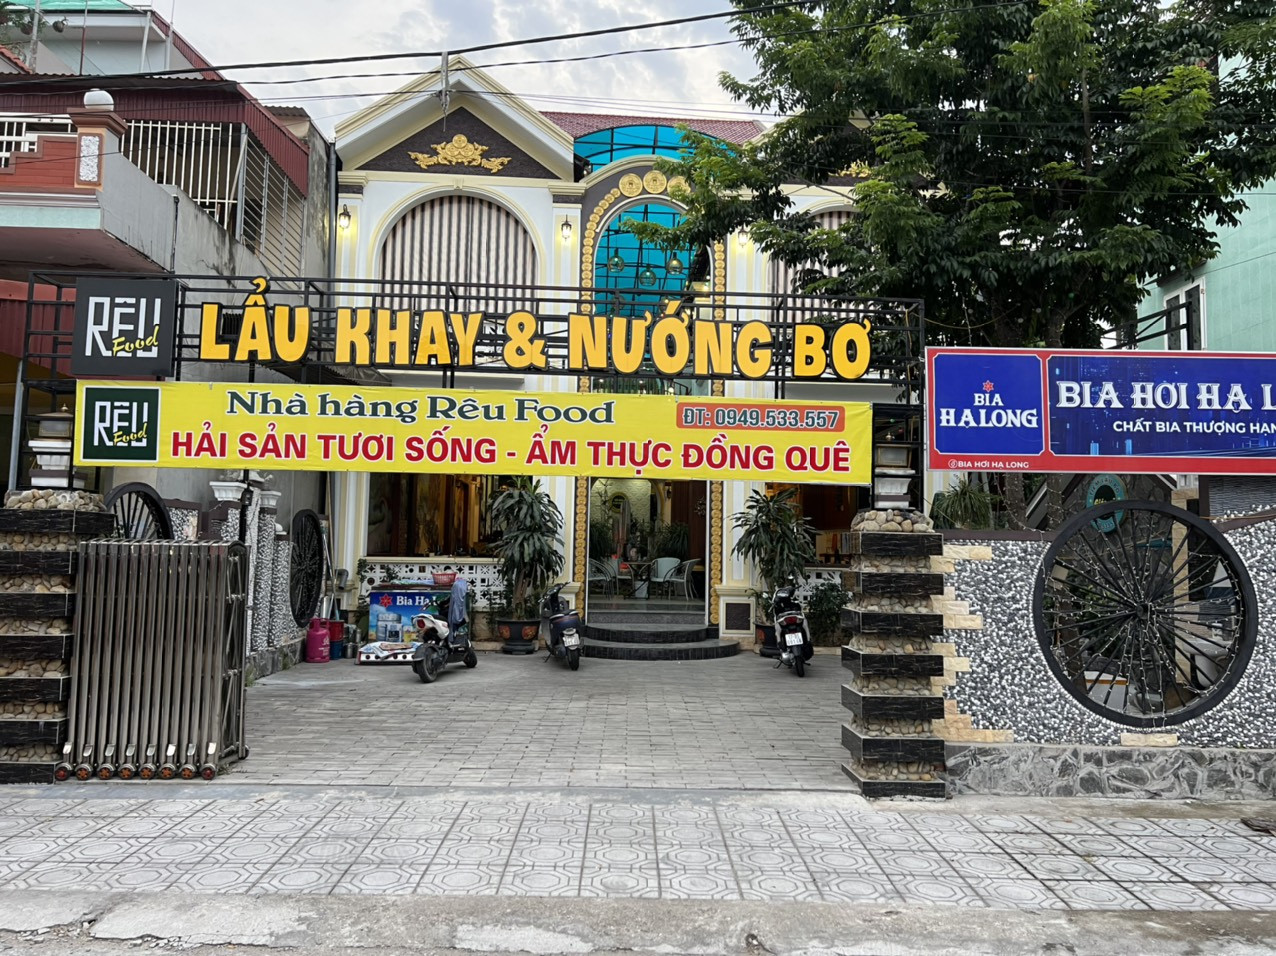 Bán nhà Rêu Food new new giá tốt vị trí vô cùng đắc địa tại Huyện Quỳnh Phụ, Tỉnh Thái Bình 14056513